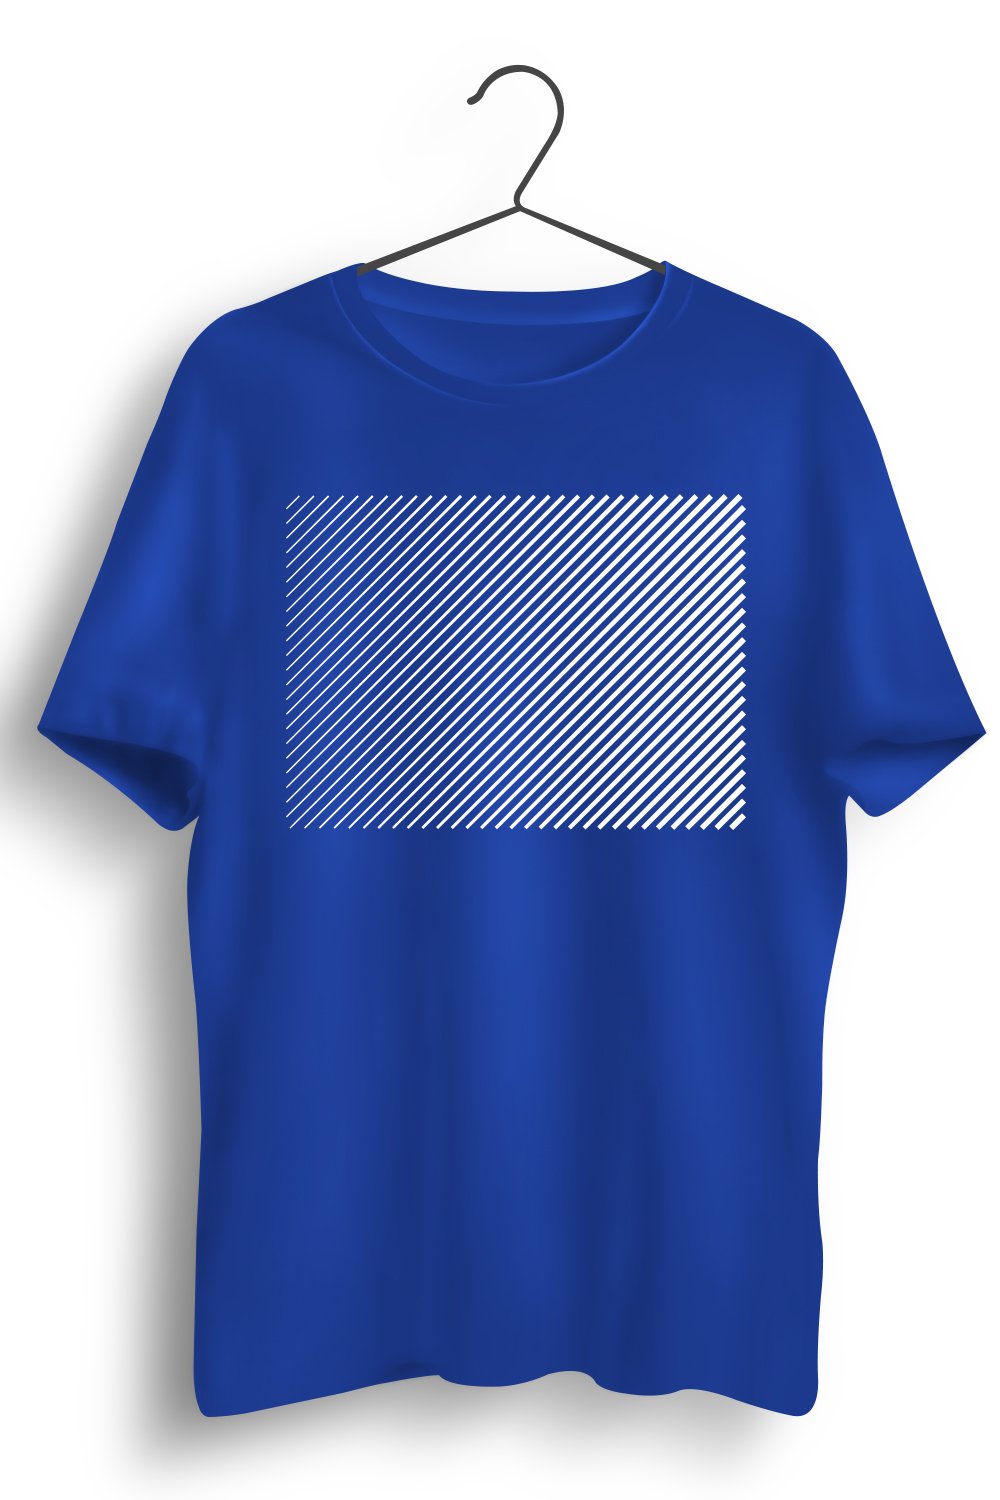 Stripes Fading Graphic Printed Blue Tshirt